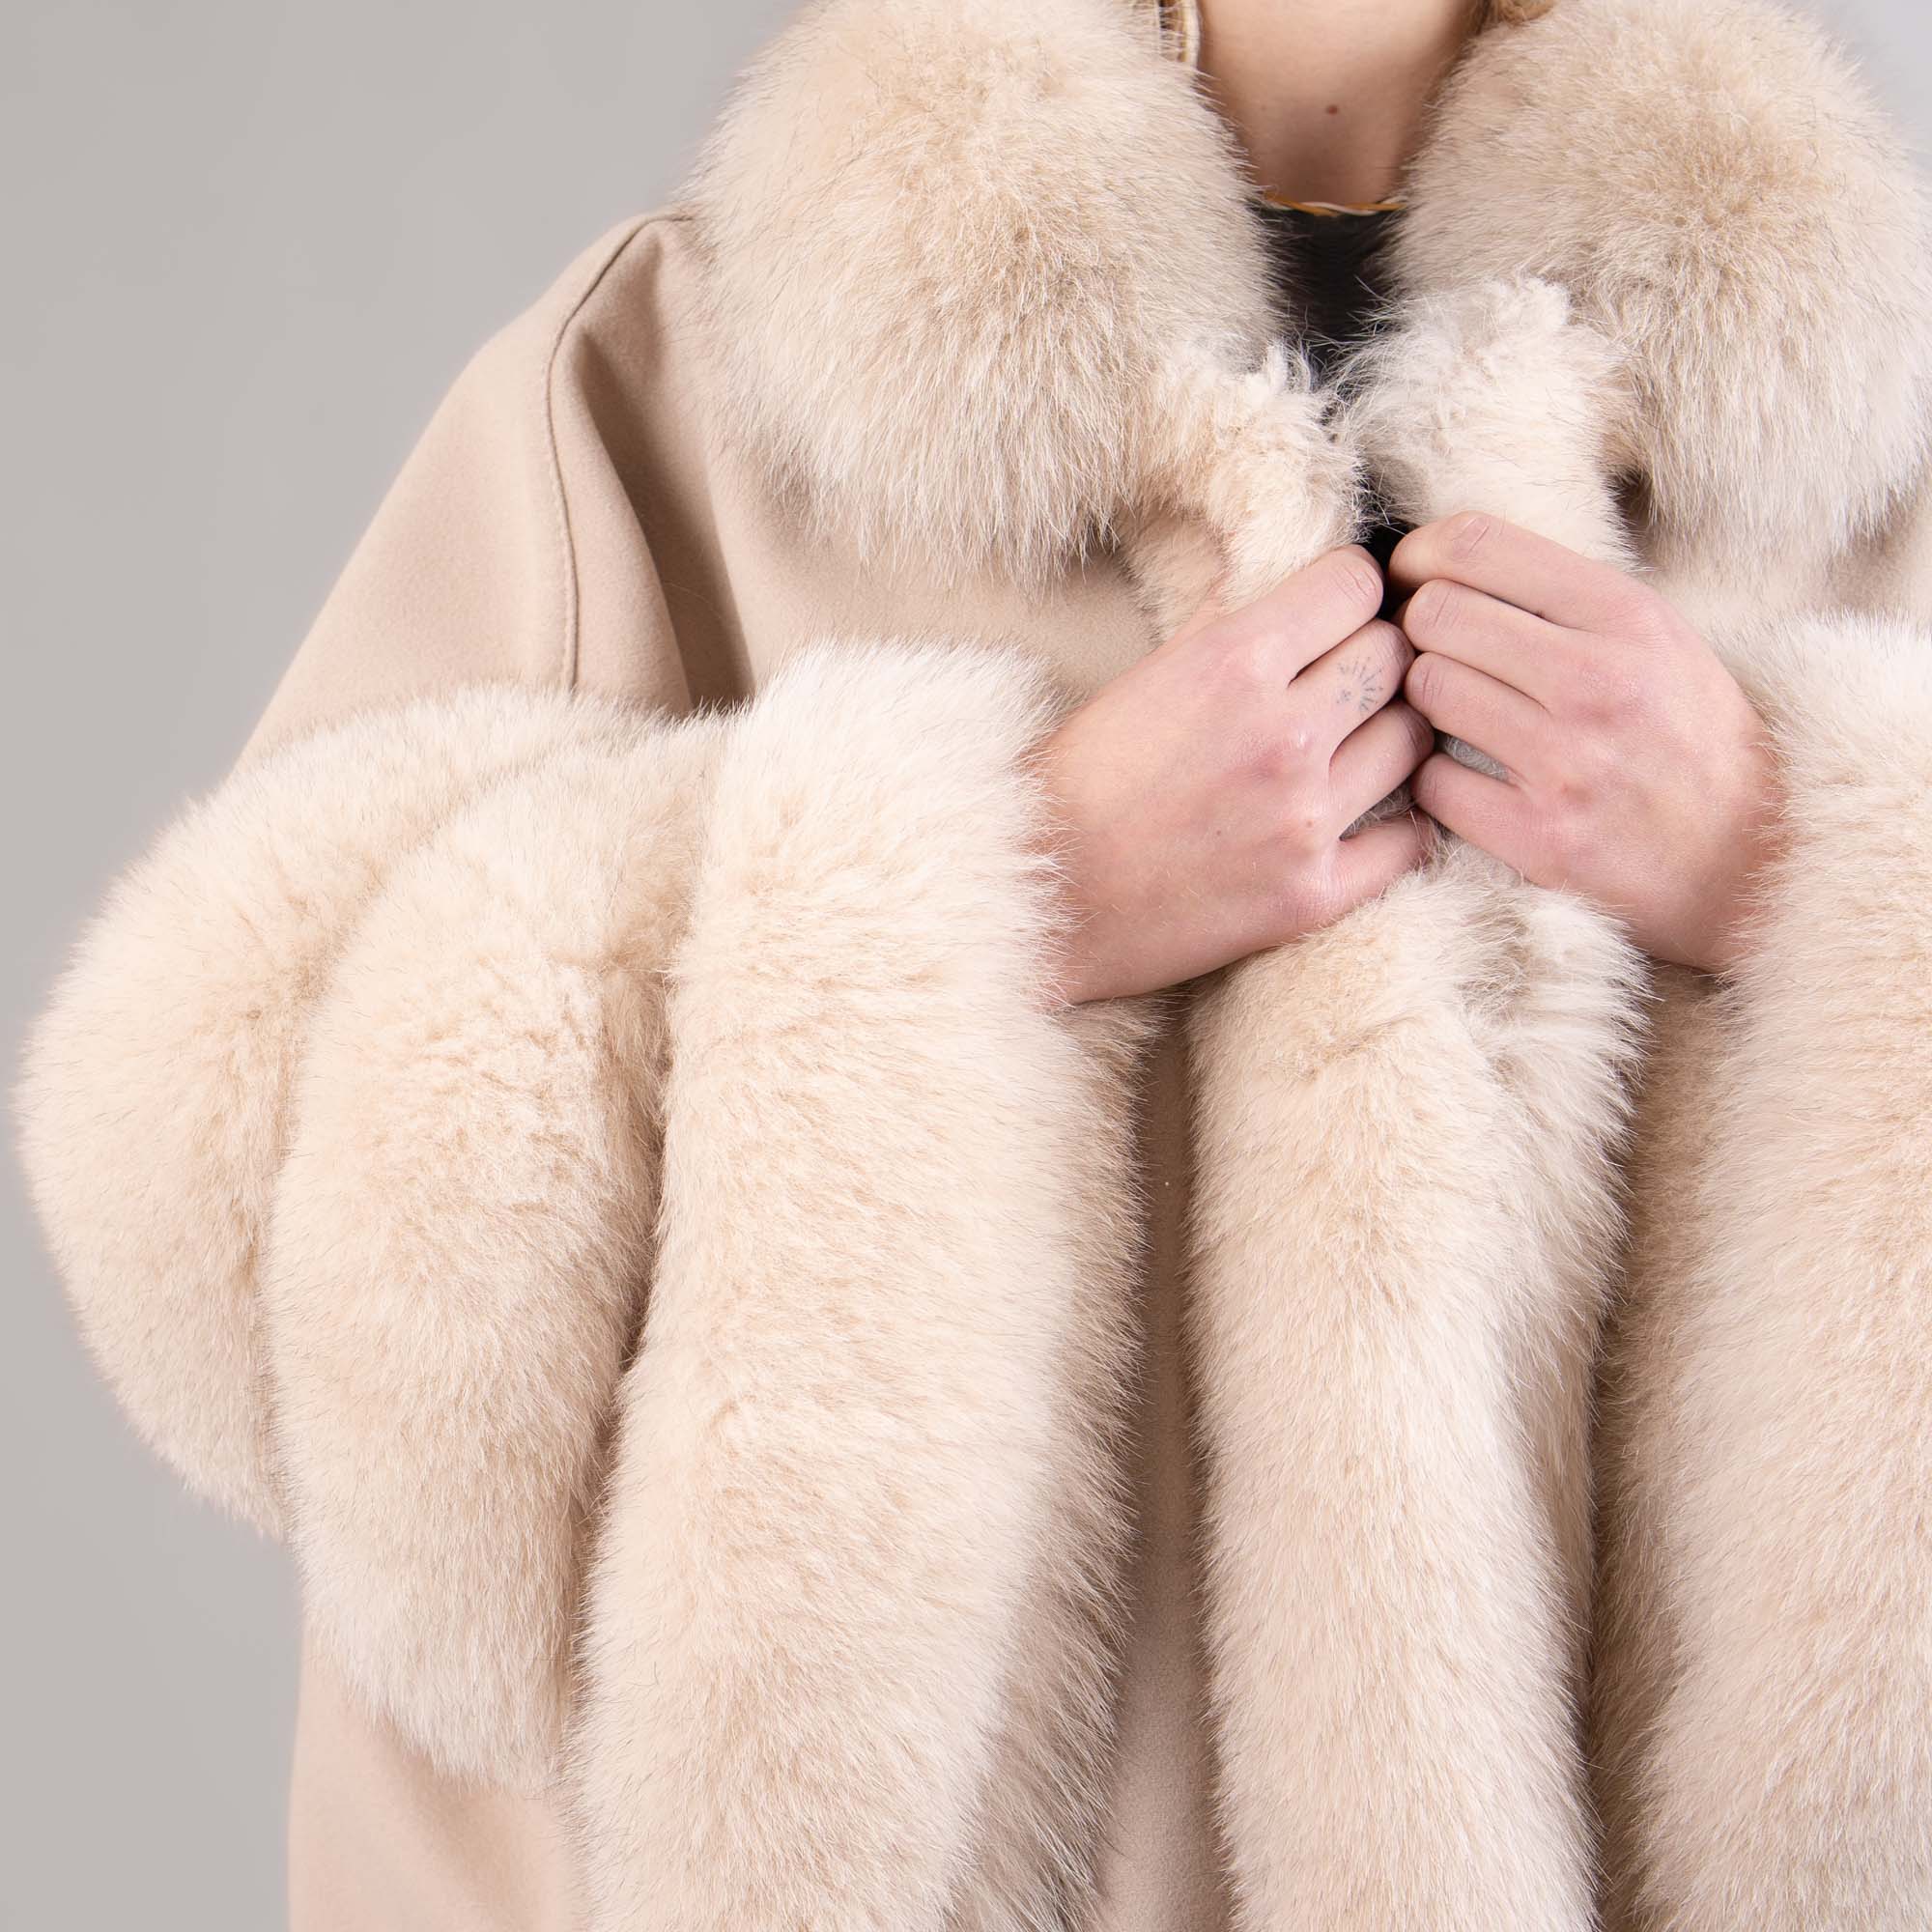 Beige cashmere cape with fox fur details